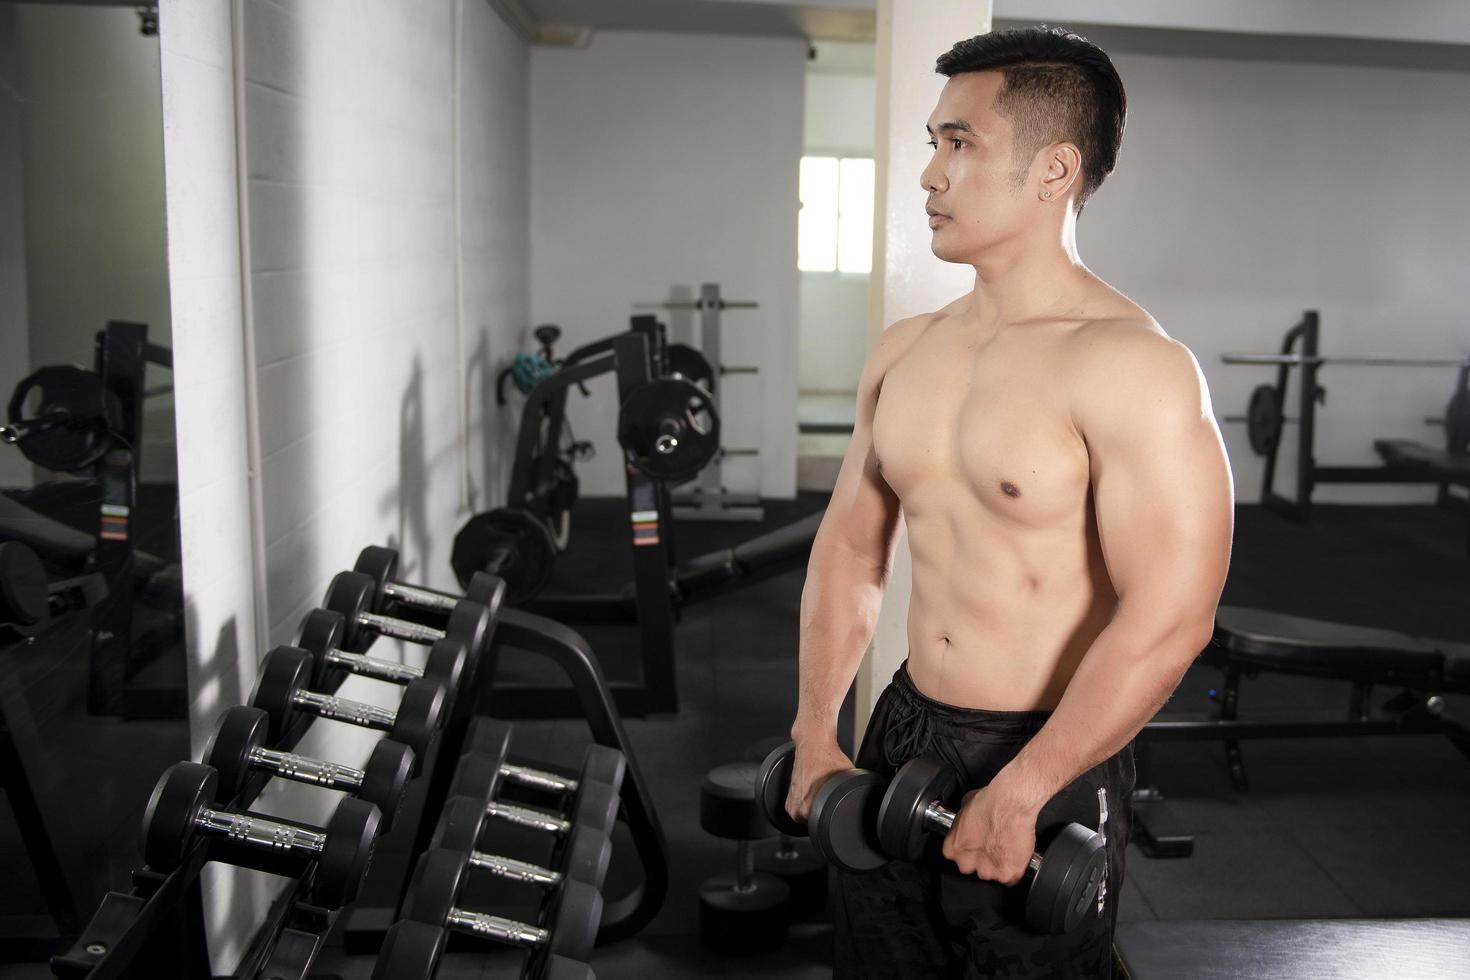 muskulöser Fitness-Mann-Bodybuilder trainiert mit Hanteln im Fitnessstudio foto